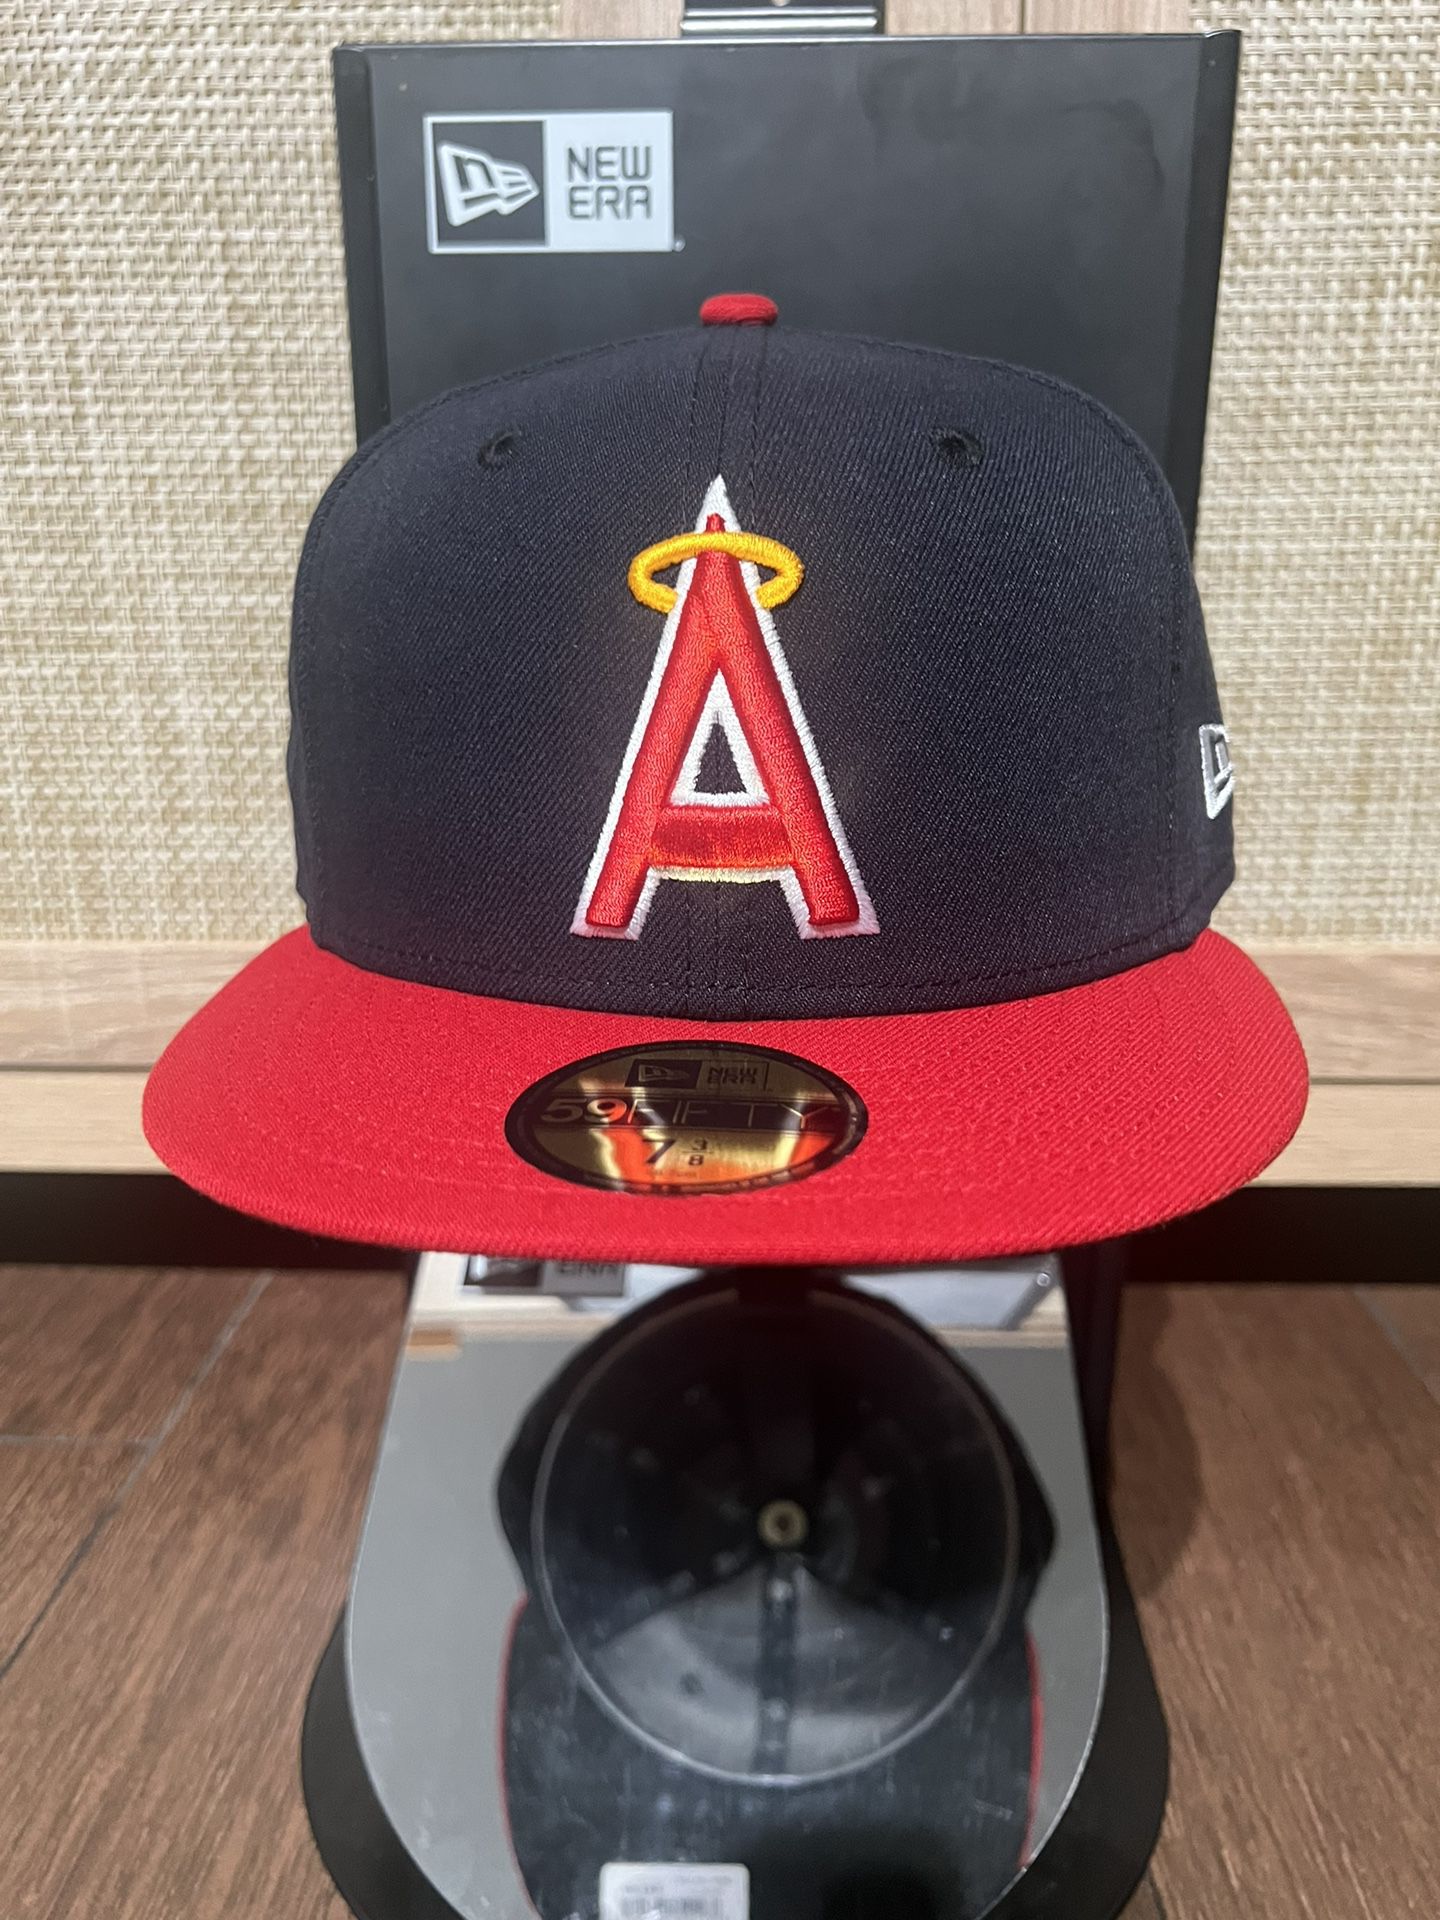 Anaheim Angels New Era Fitted Hat 